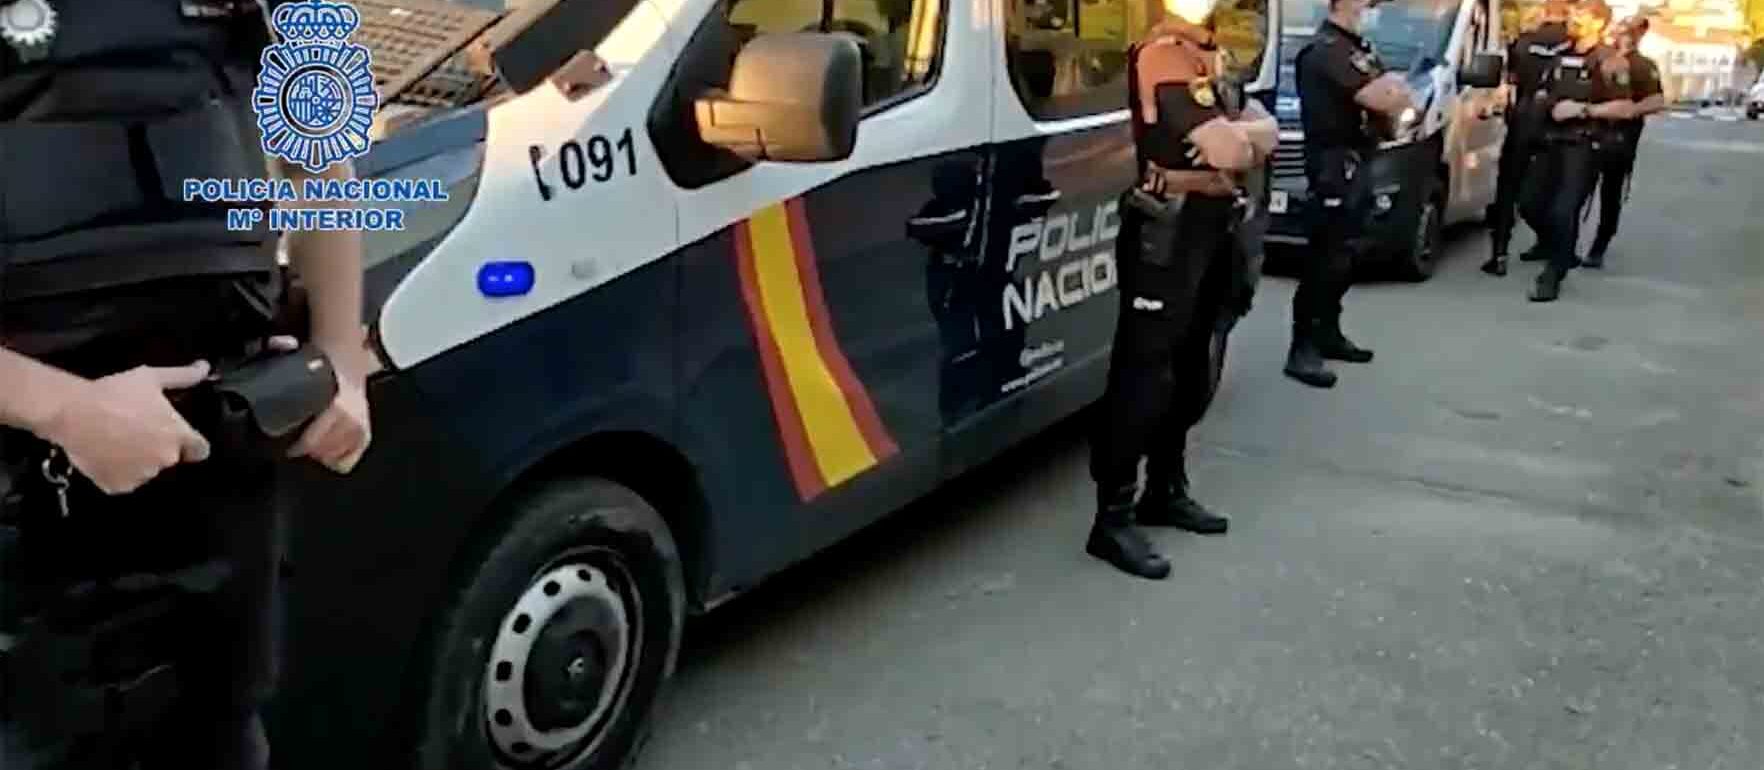 Detalle de la vasta operación antidroga de la Policía Nacional en El Casar de Escalona